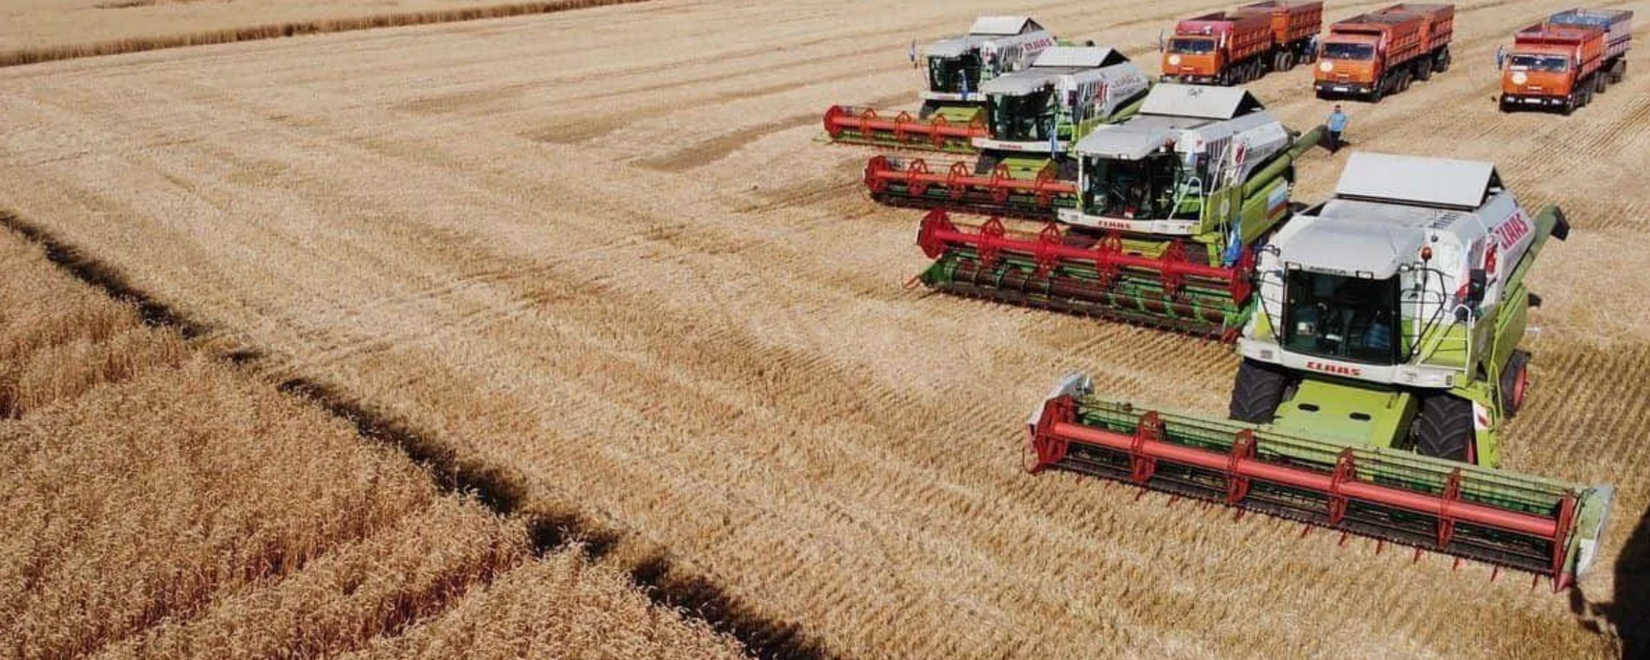 Уборочная кампания зерновых во Владимирской области выполнена на 80%